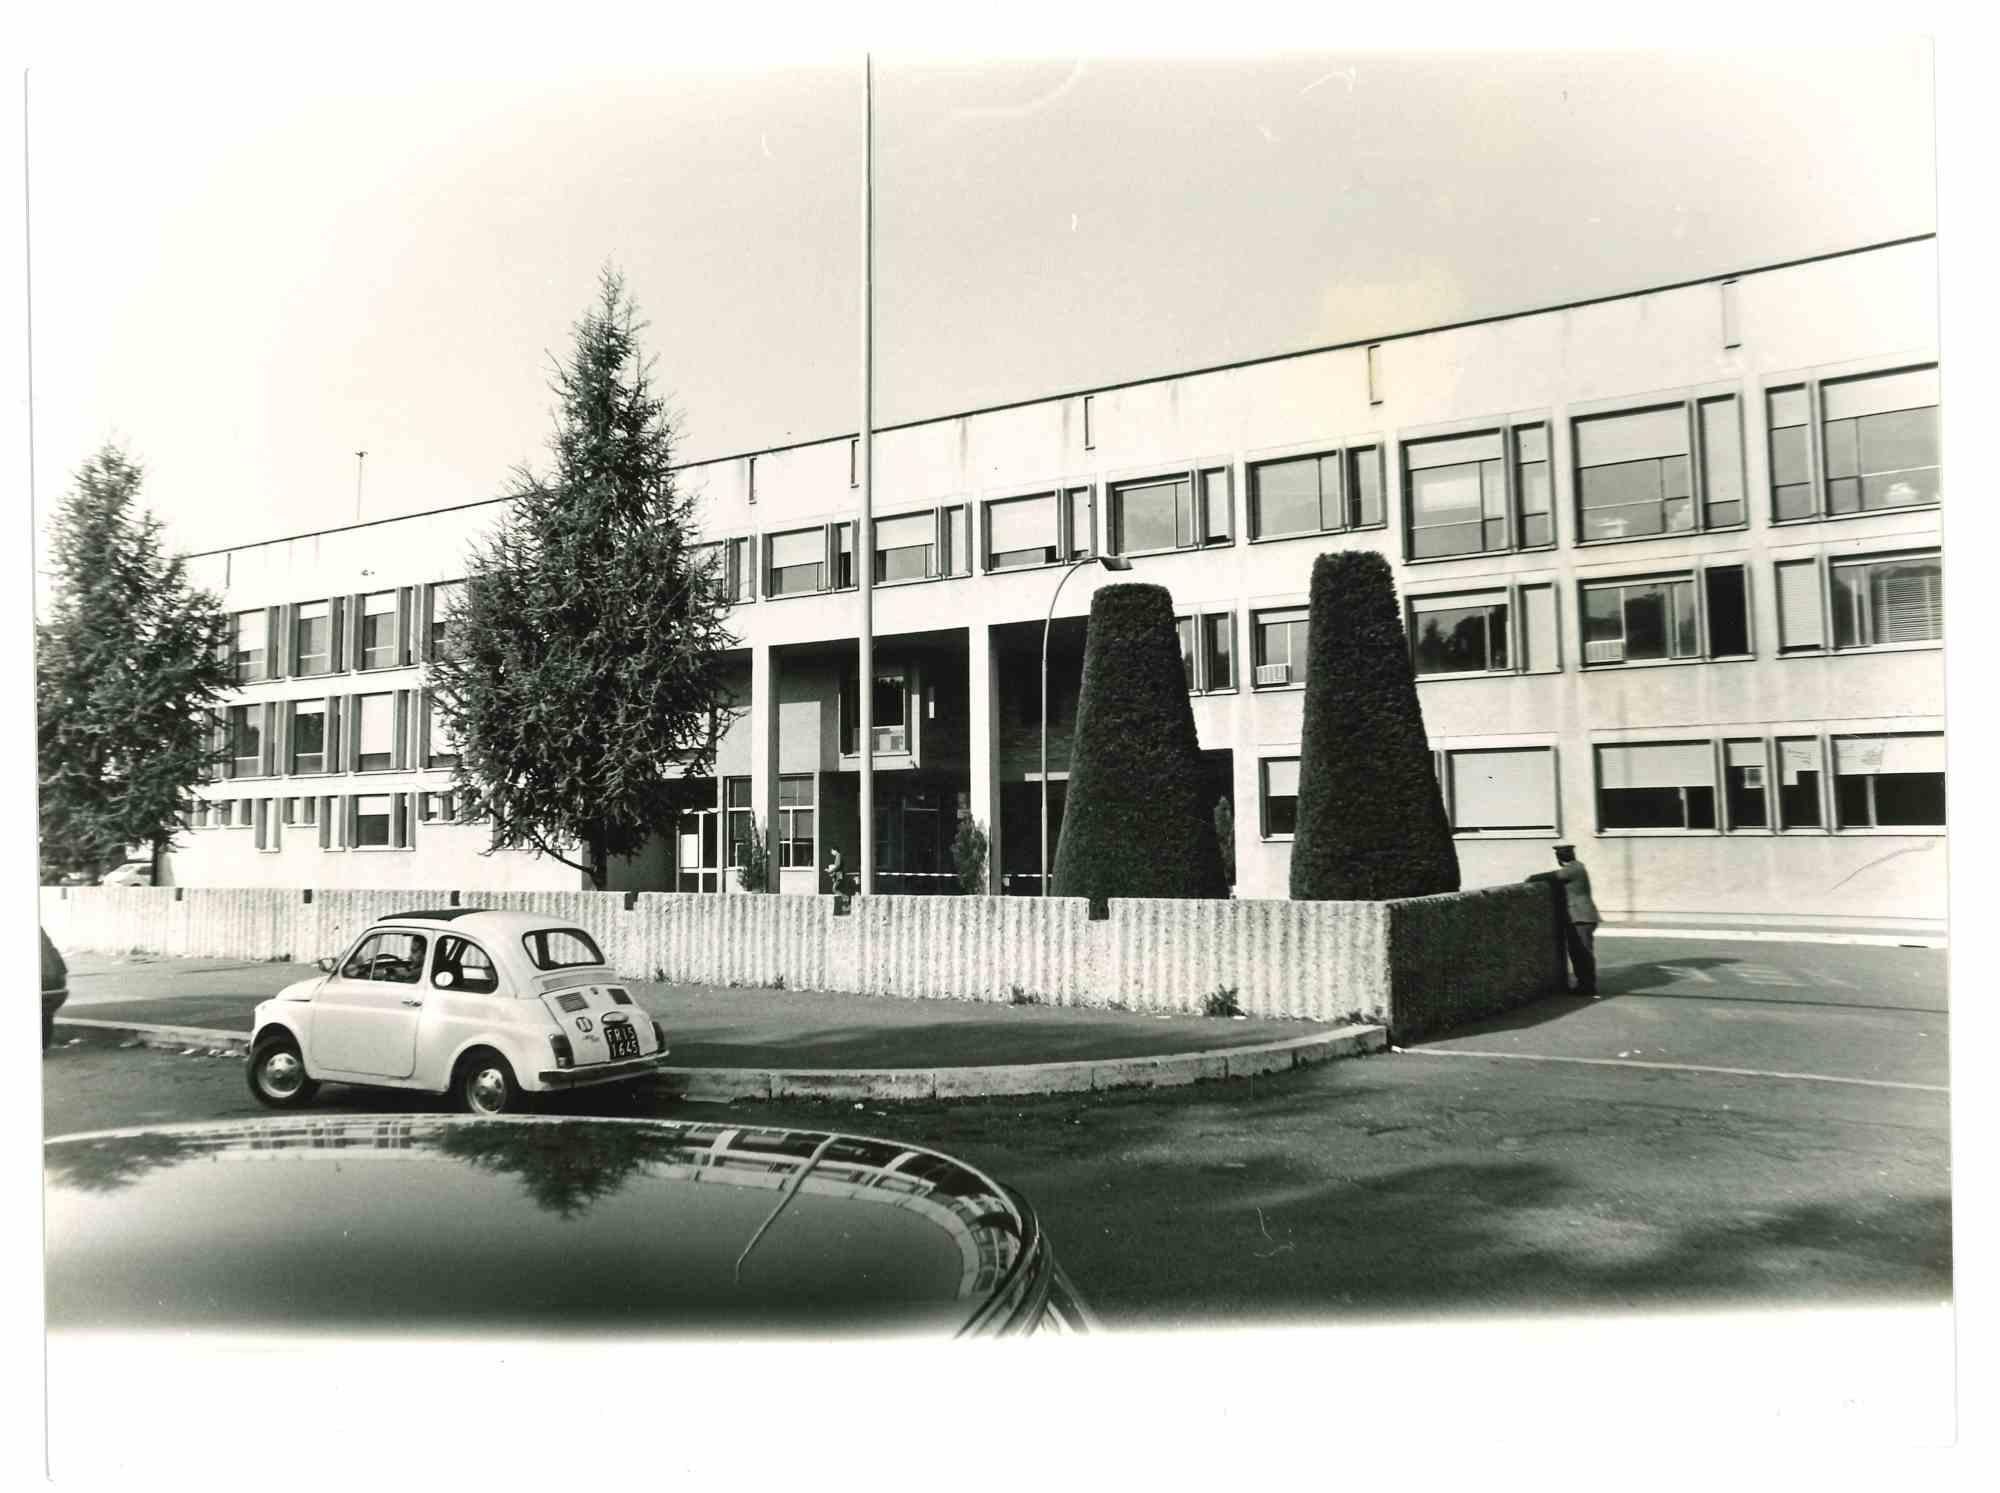  Historical Photo of Prison - Rebibbia - 1970s